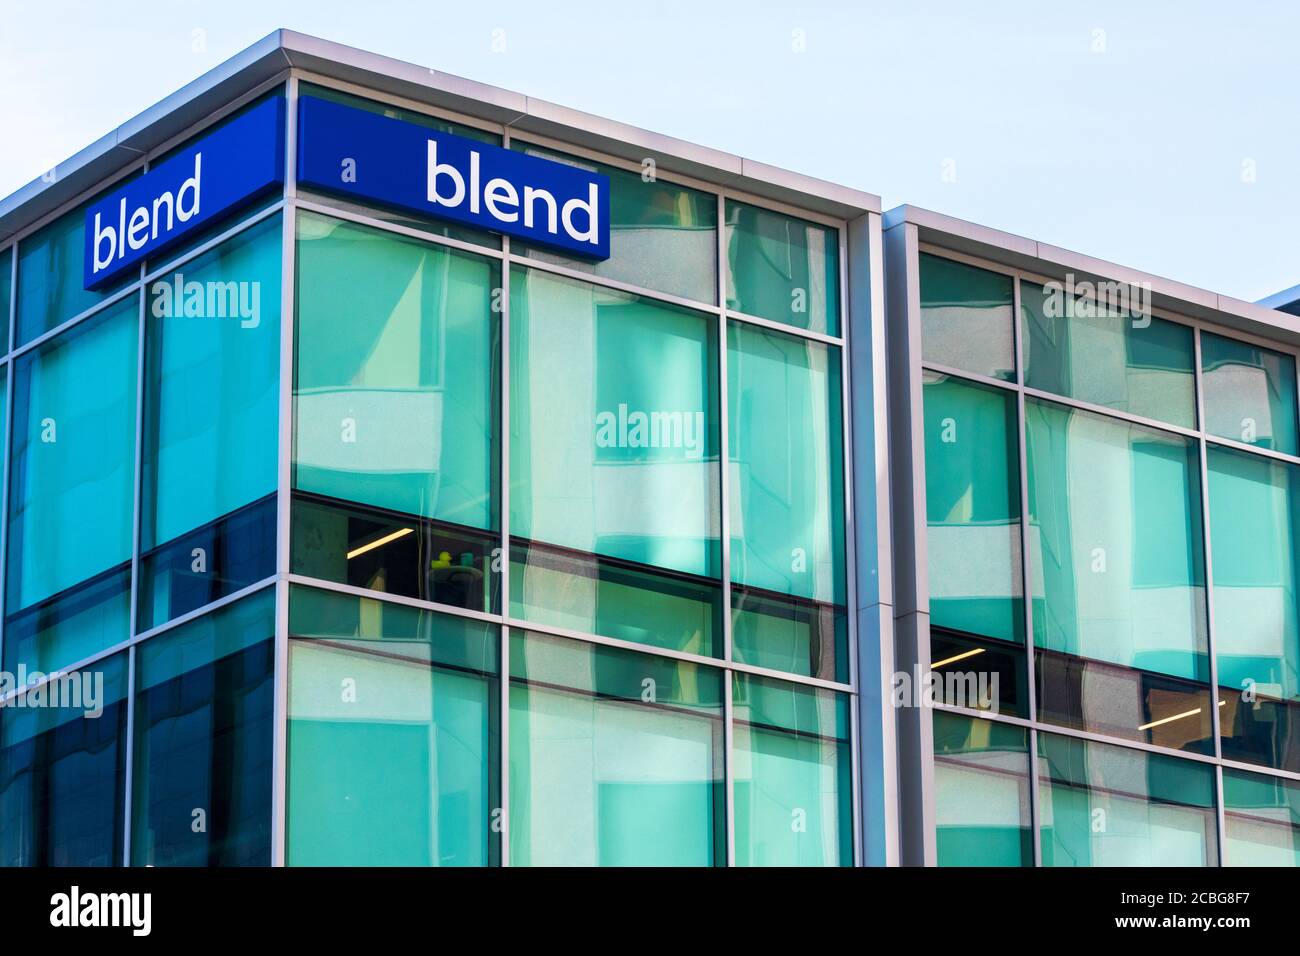 Blend Logo auf HQ Fassade. Blend ist ein Technologieunternehmen im Silicon Valley, das das Kreditsystem für Privatkunden transformiert - San Francisco, Kalifornien, USA - 2 Stockfoto